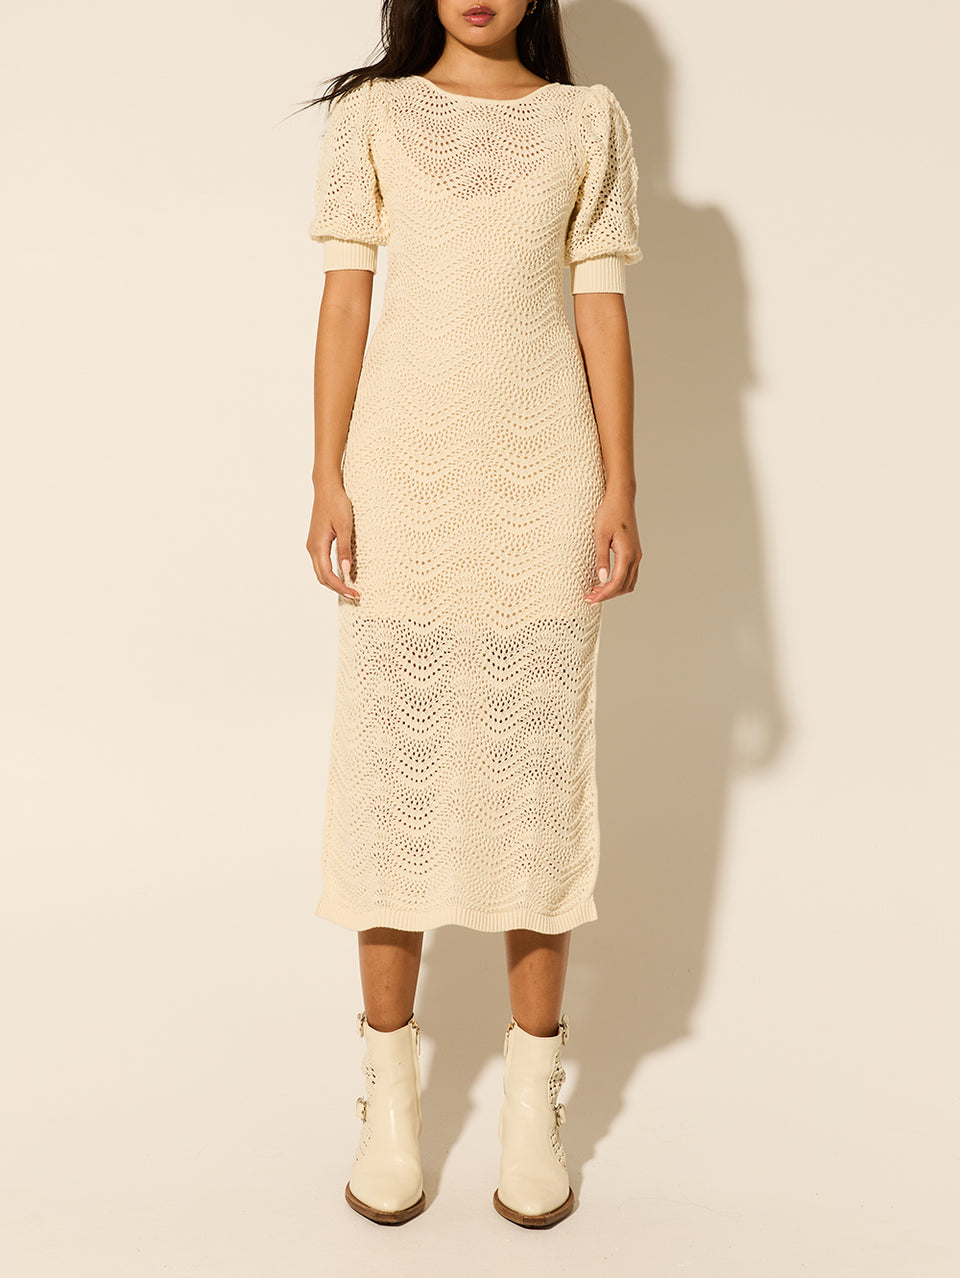 Mariana Knit Dress KIVARI | Model wears cream knit dress